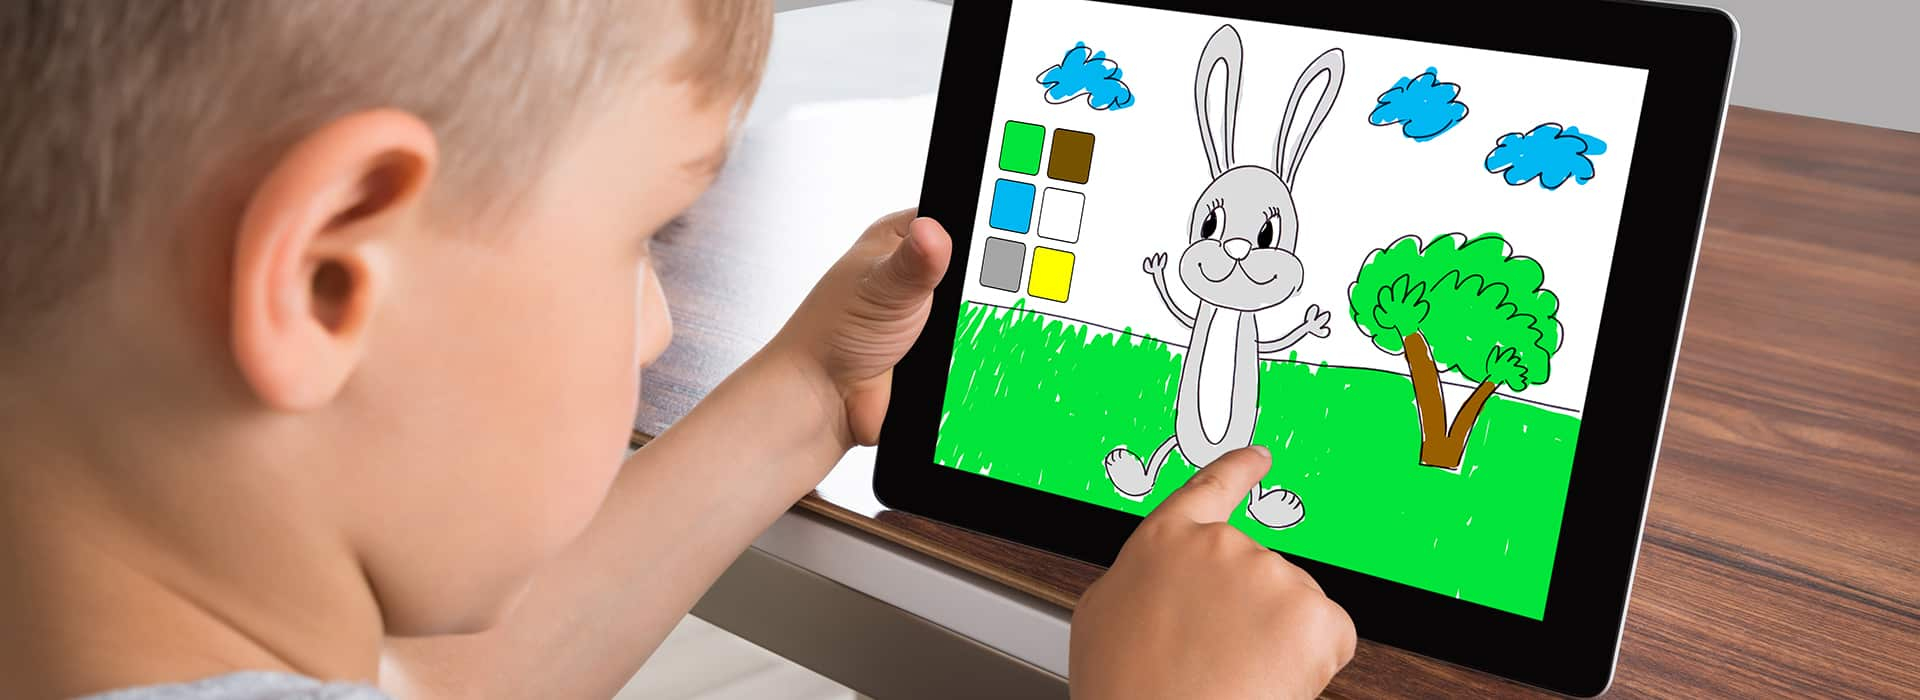 Tablette Enfant : Voici Les Meilleurs Modèles À Offrir En 2020 intérieur Jeux Pour Petit Garcon De 3 Ans Gratuit